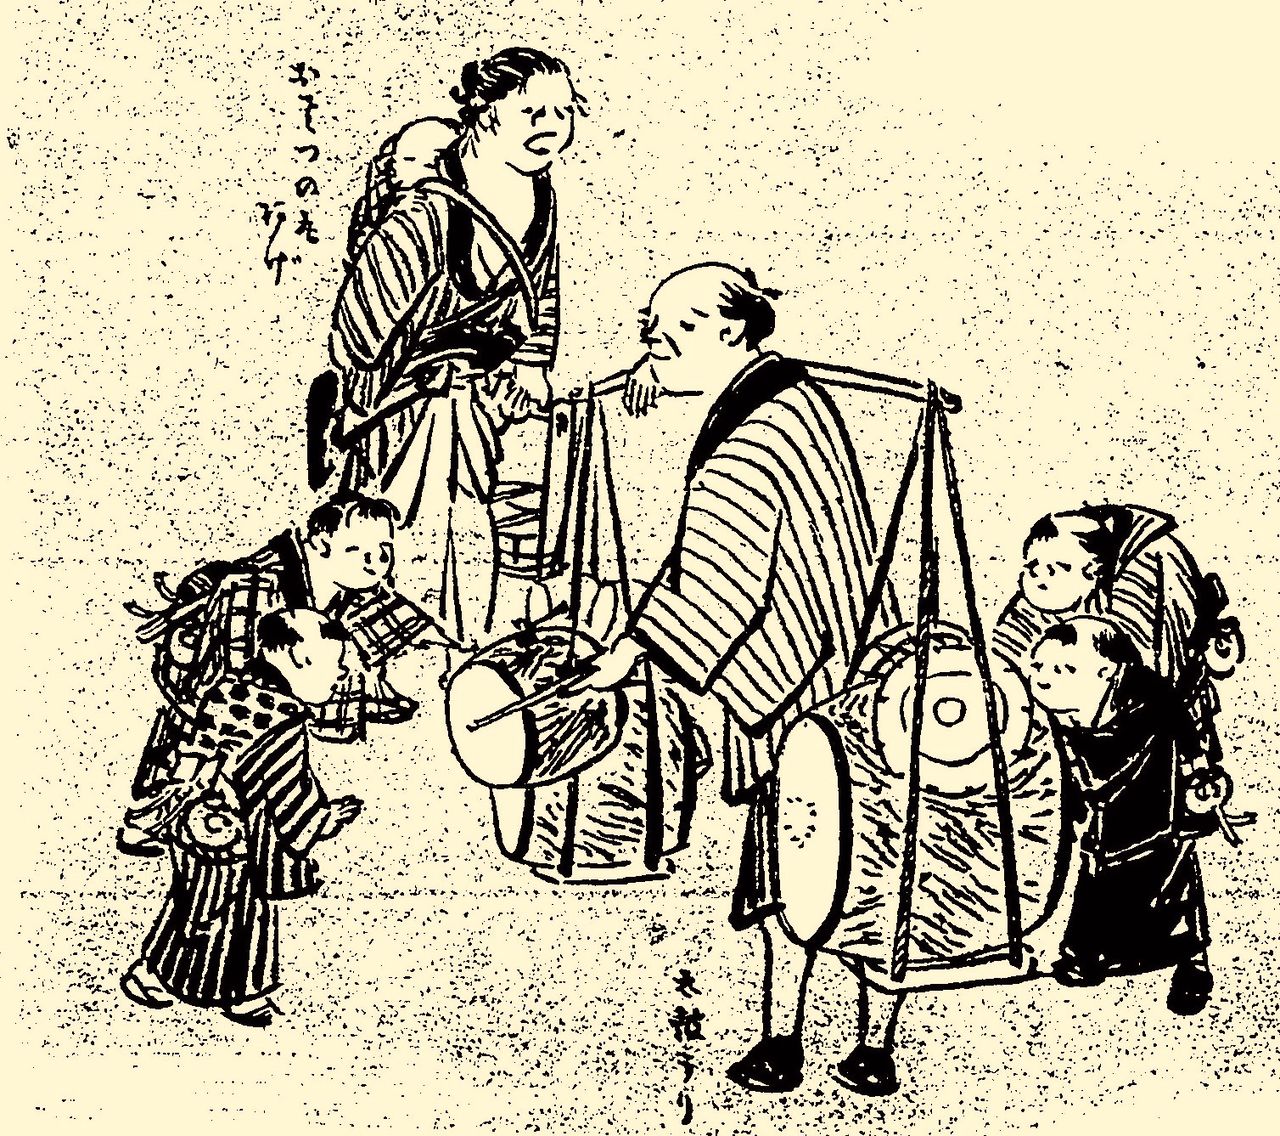 Des enfants se ruent vers des vendeurs de tambours. Le son des plus grands taiko servait à attirer les clients potentiels qui affluaient pour acheter de petits tambours à main. (« Les coutumes d’Edo illustrées », Edofu-nai ehon fûzoku ôrai. Collections de la Bibliothèque nationale de la Diète.)